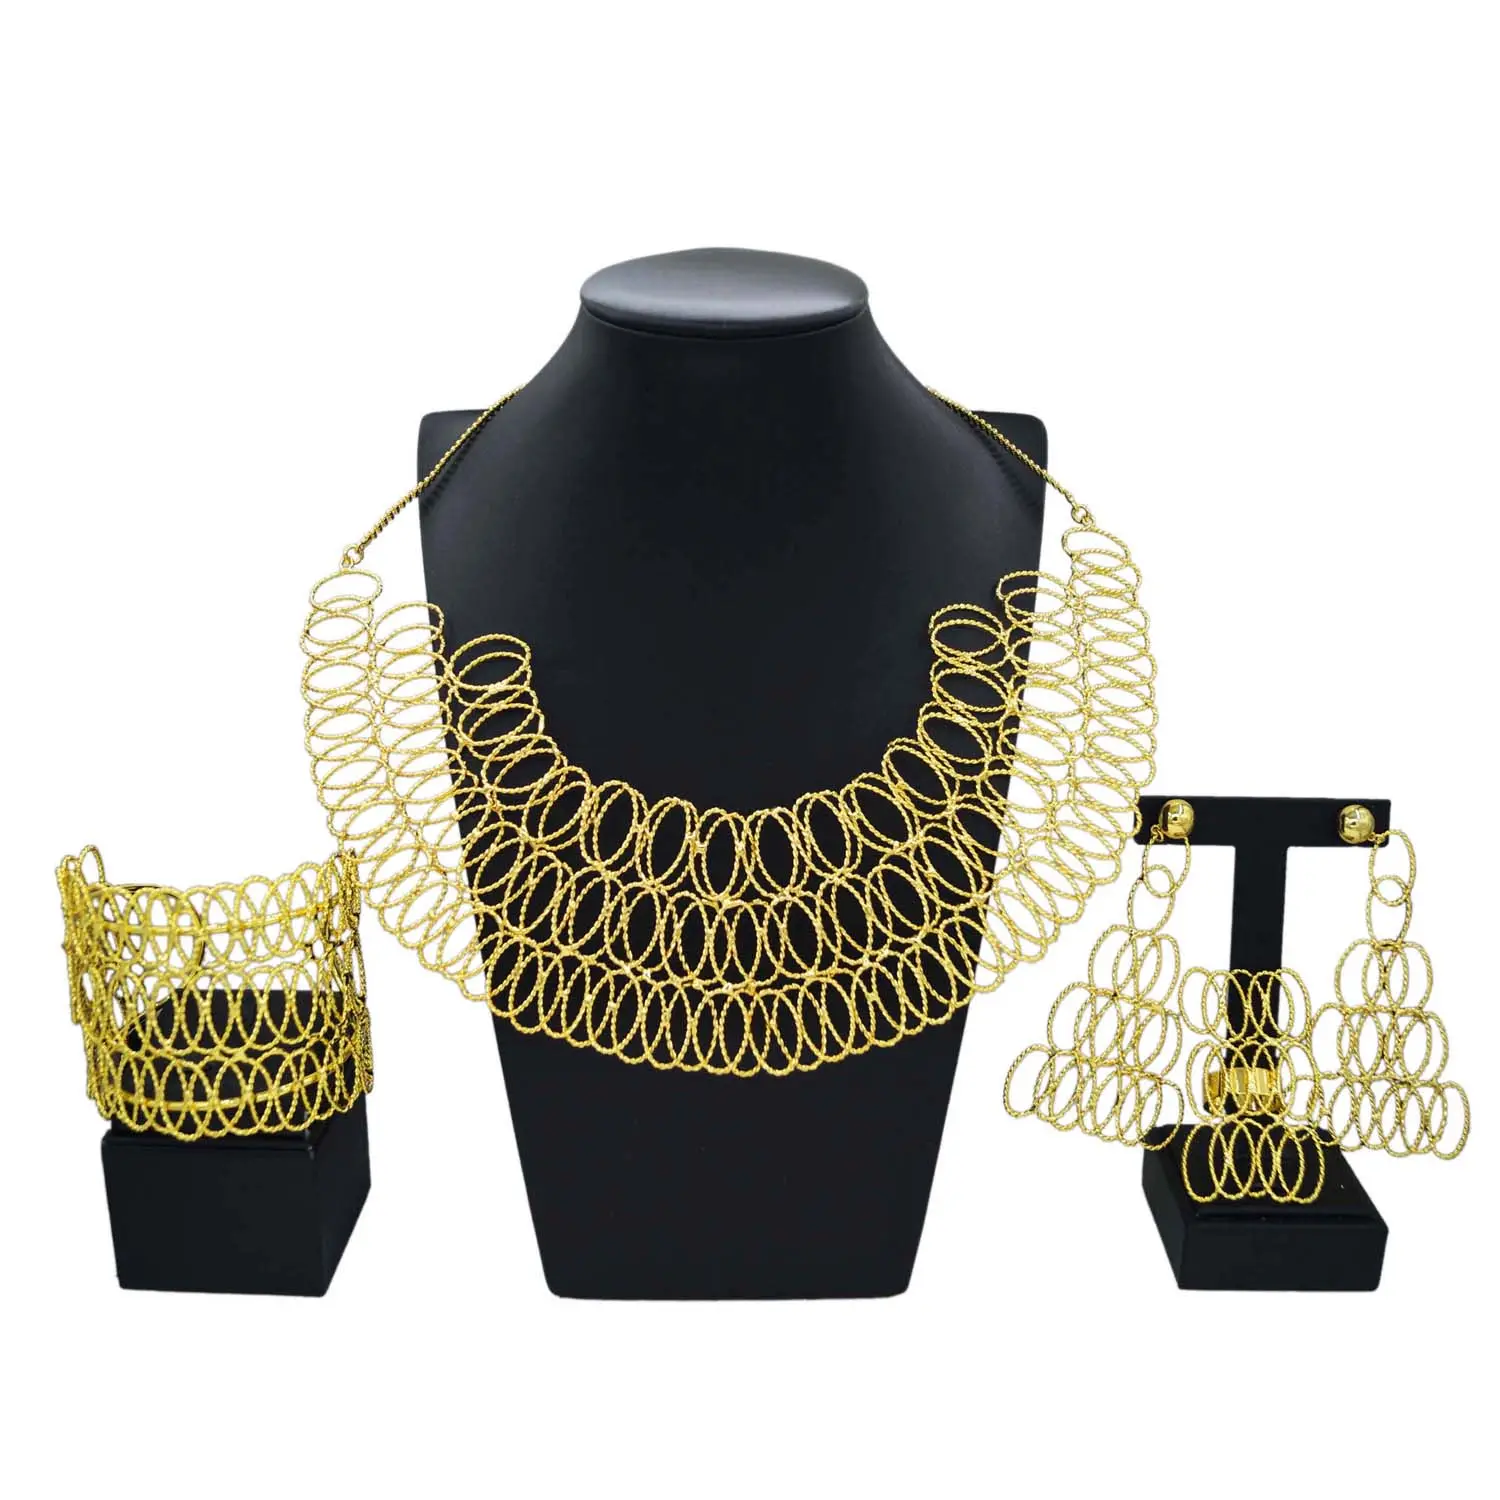 Yulaili özel Online alışveriş yapay brezilyalı boncuk kolye takı setleri altın kaplama 18k doğum günü hediyeleri için kadın